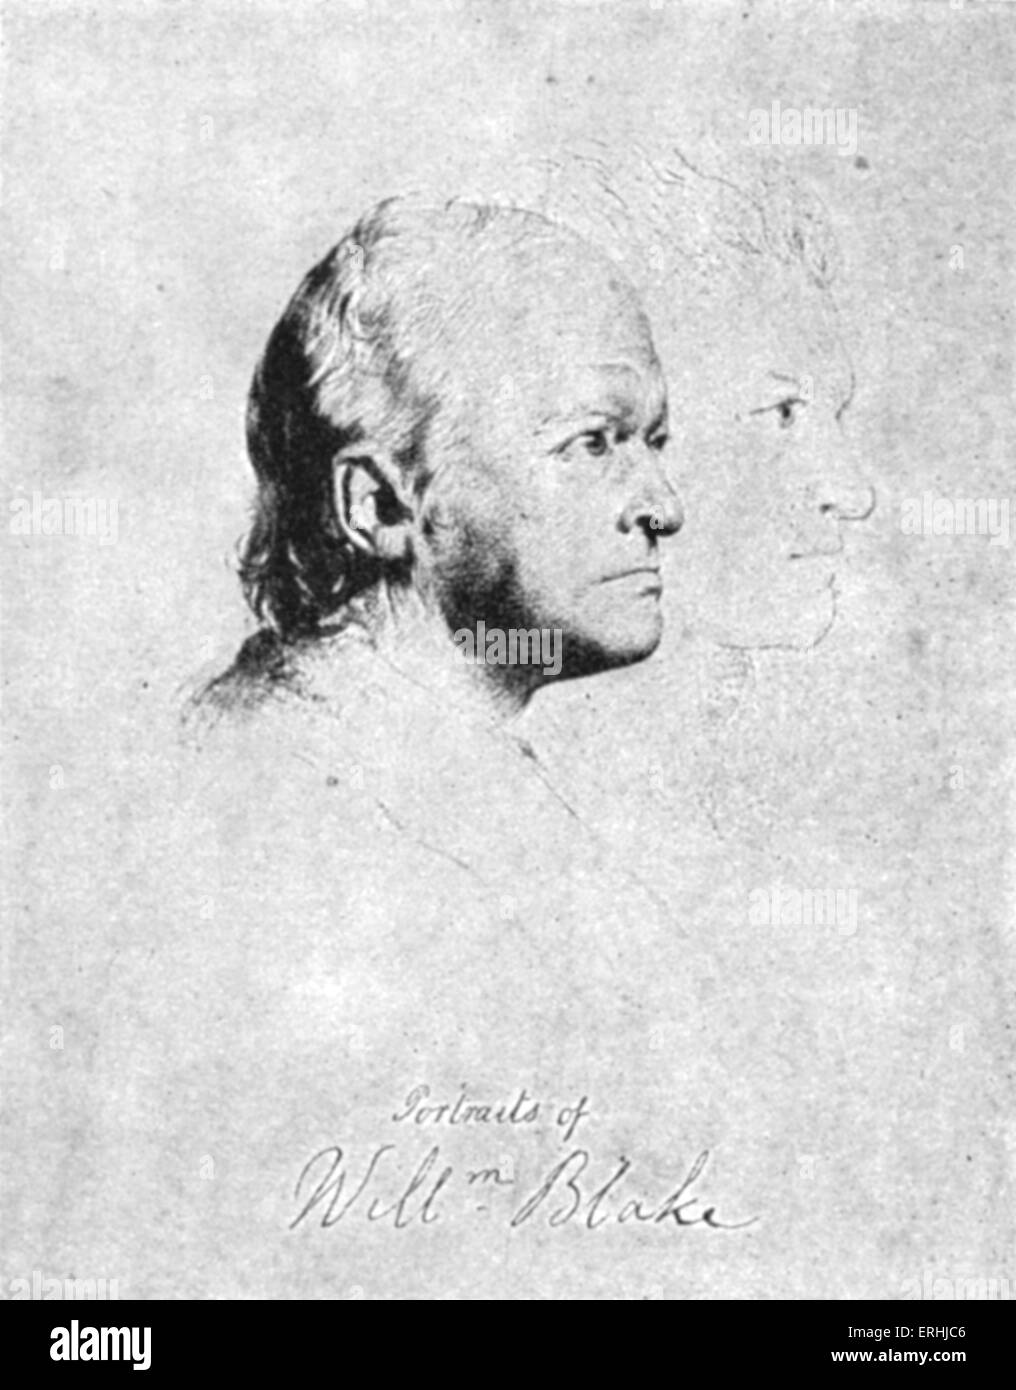 William Blake - firmato autoritratto del poeta inglese, artista ed incisore. 28 Novembre 1757 - 12 agosto 1827 Foto Stock